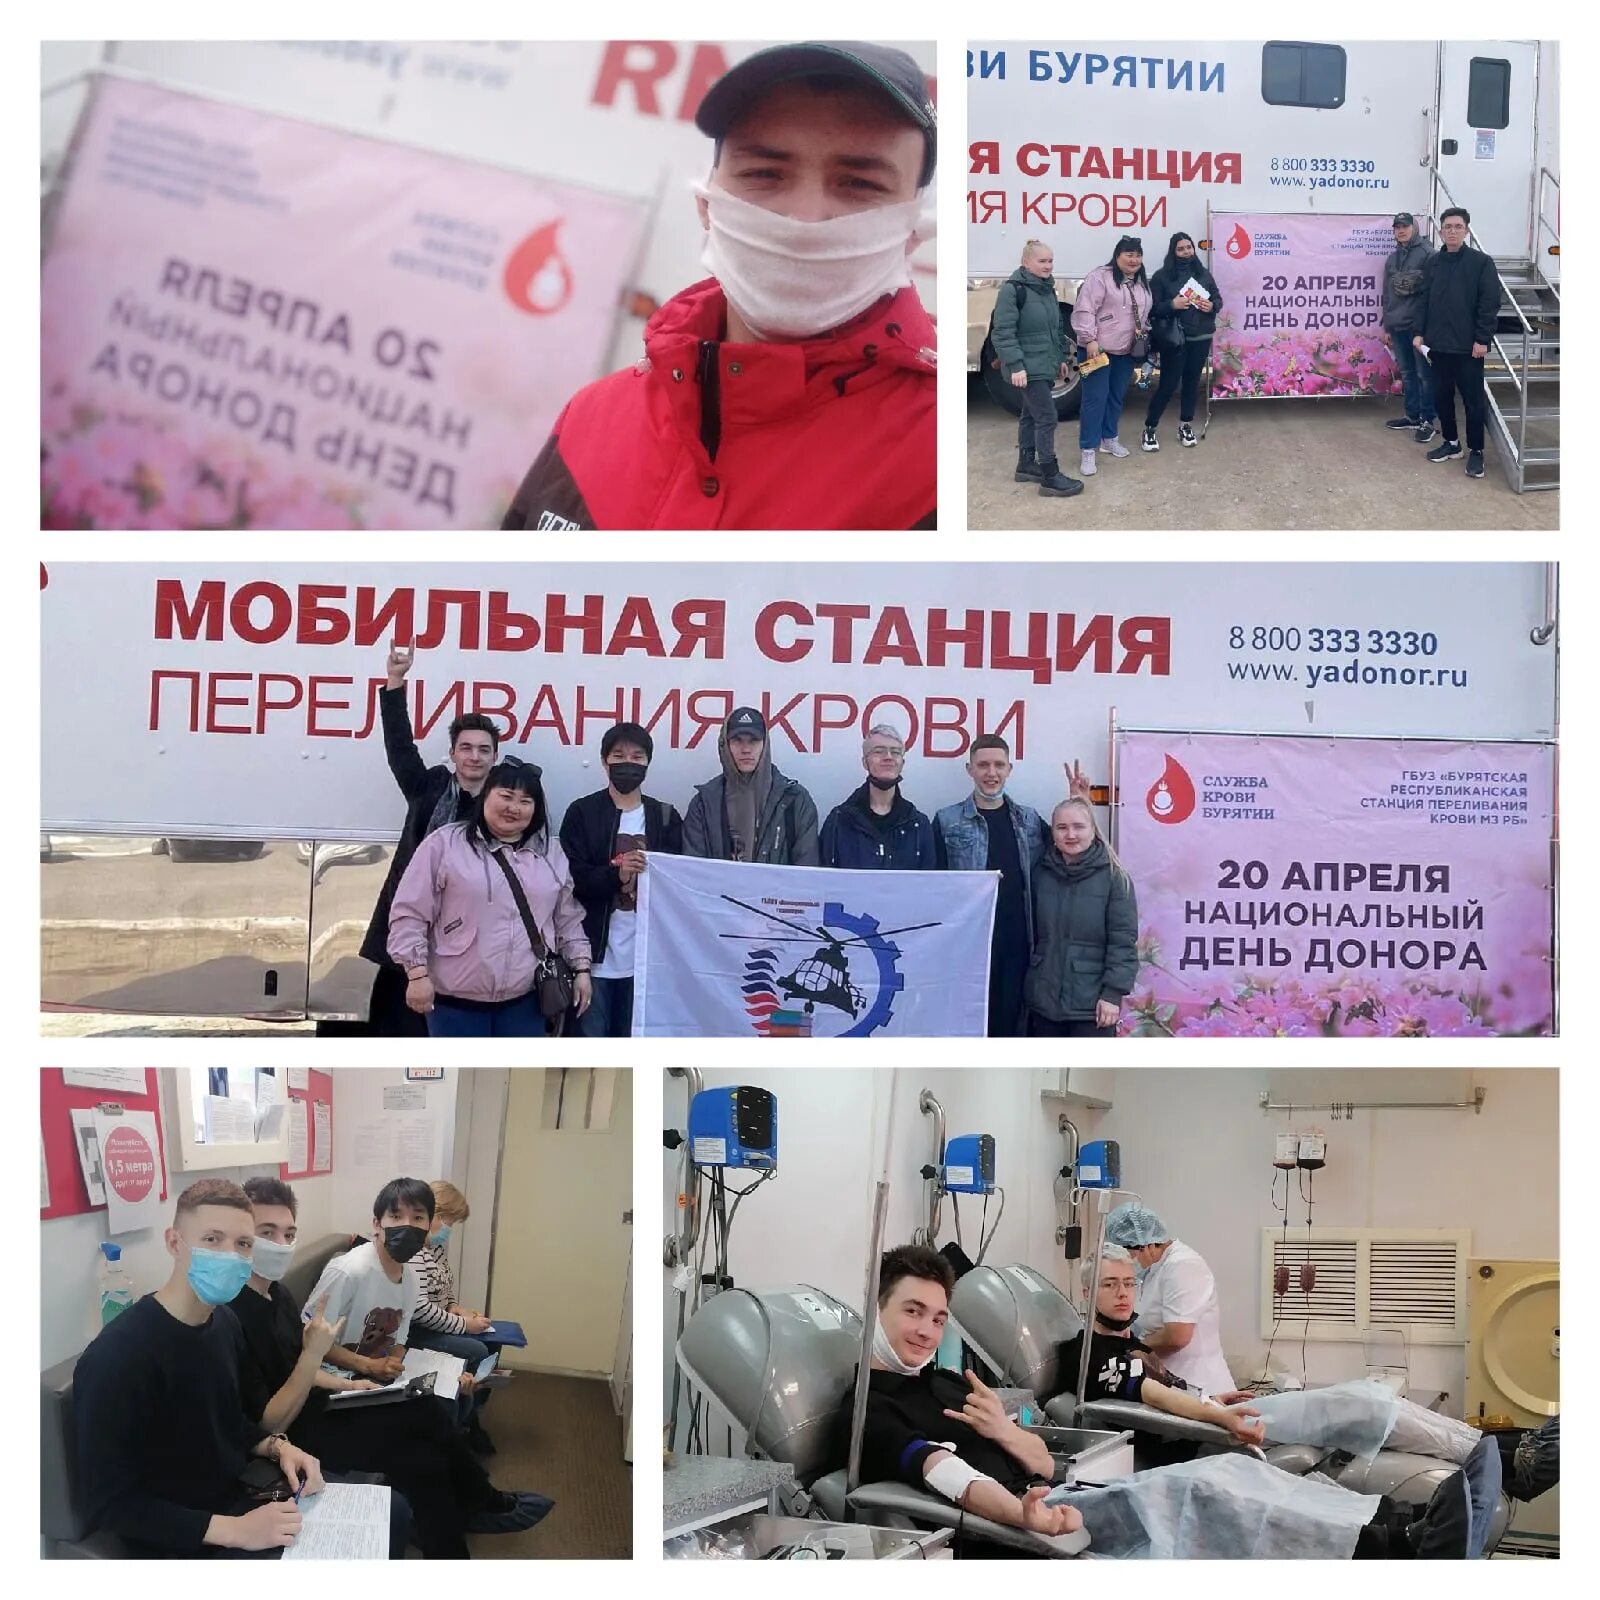 20 апреля что за праздник. День донора. Национальный день донора крови в России. 20 Апреля праздник в России. 20 Апреля день донора.